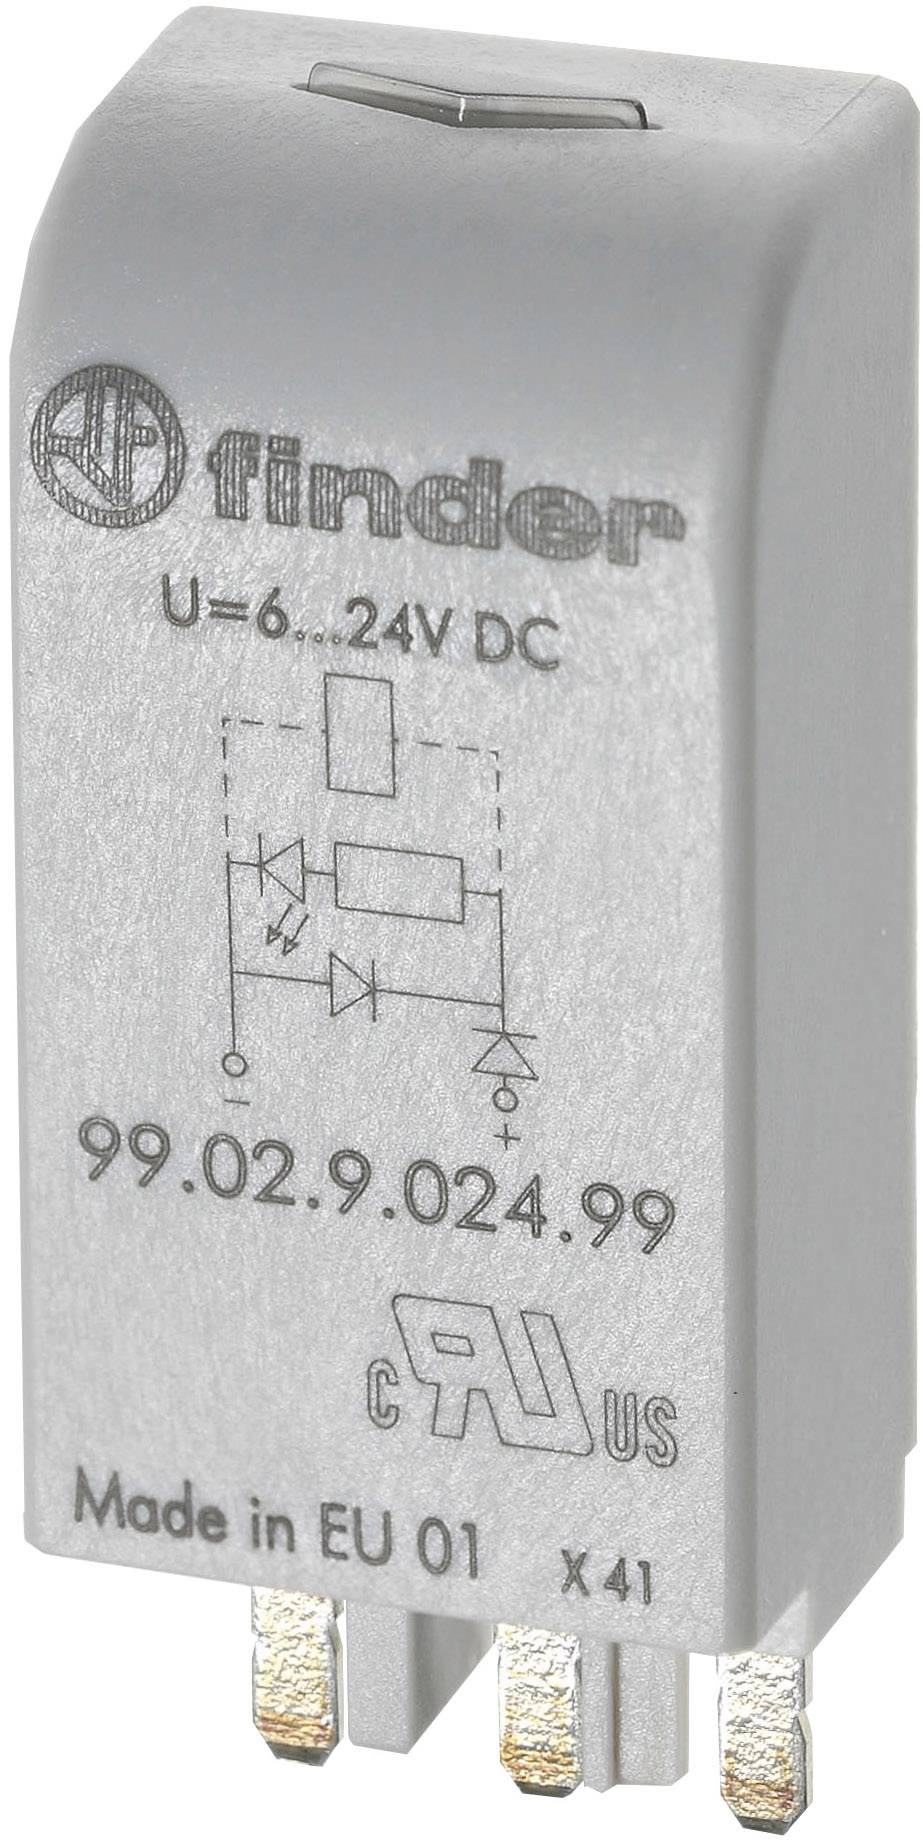 FINDER Steckmodul mit RC-Glied 1 St. Finder 99.02.0.230.09 Passend für Serie: Finder Serie 90, Finde